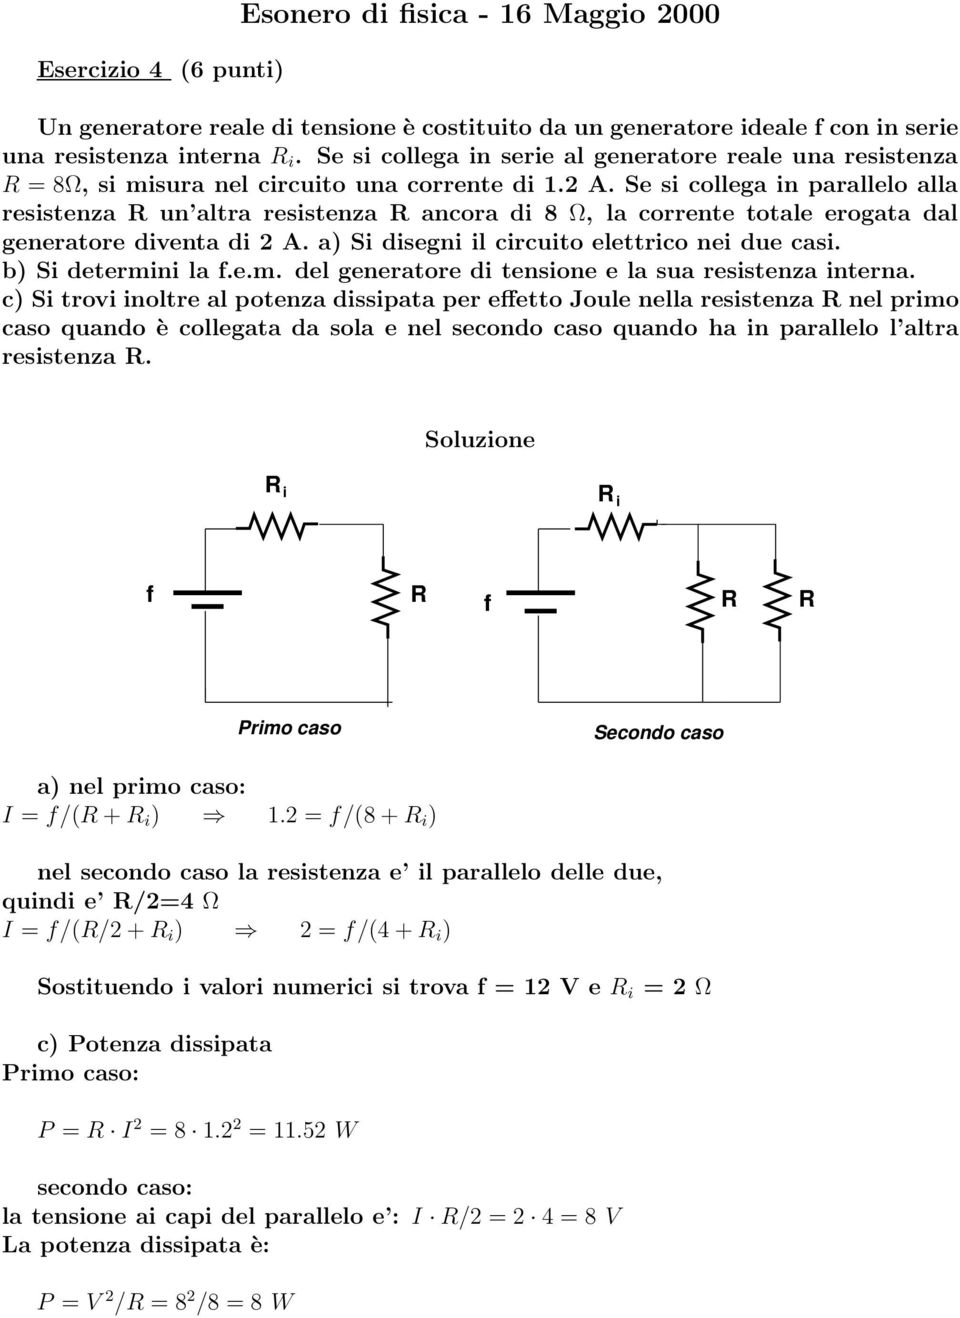 Se si collega in parallelo alla resistenza R un altra resistenza R ancora di 8 Ω, la corrente totale erogata dal generatore diventa di A. a) Si disegni il circuito elettrico nei due casi.